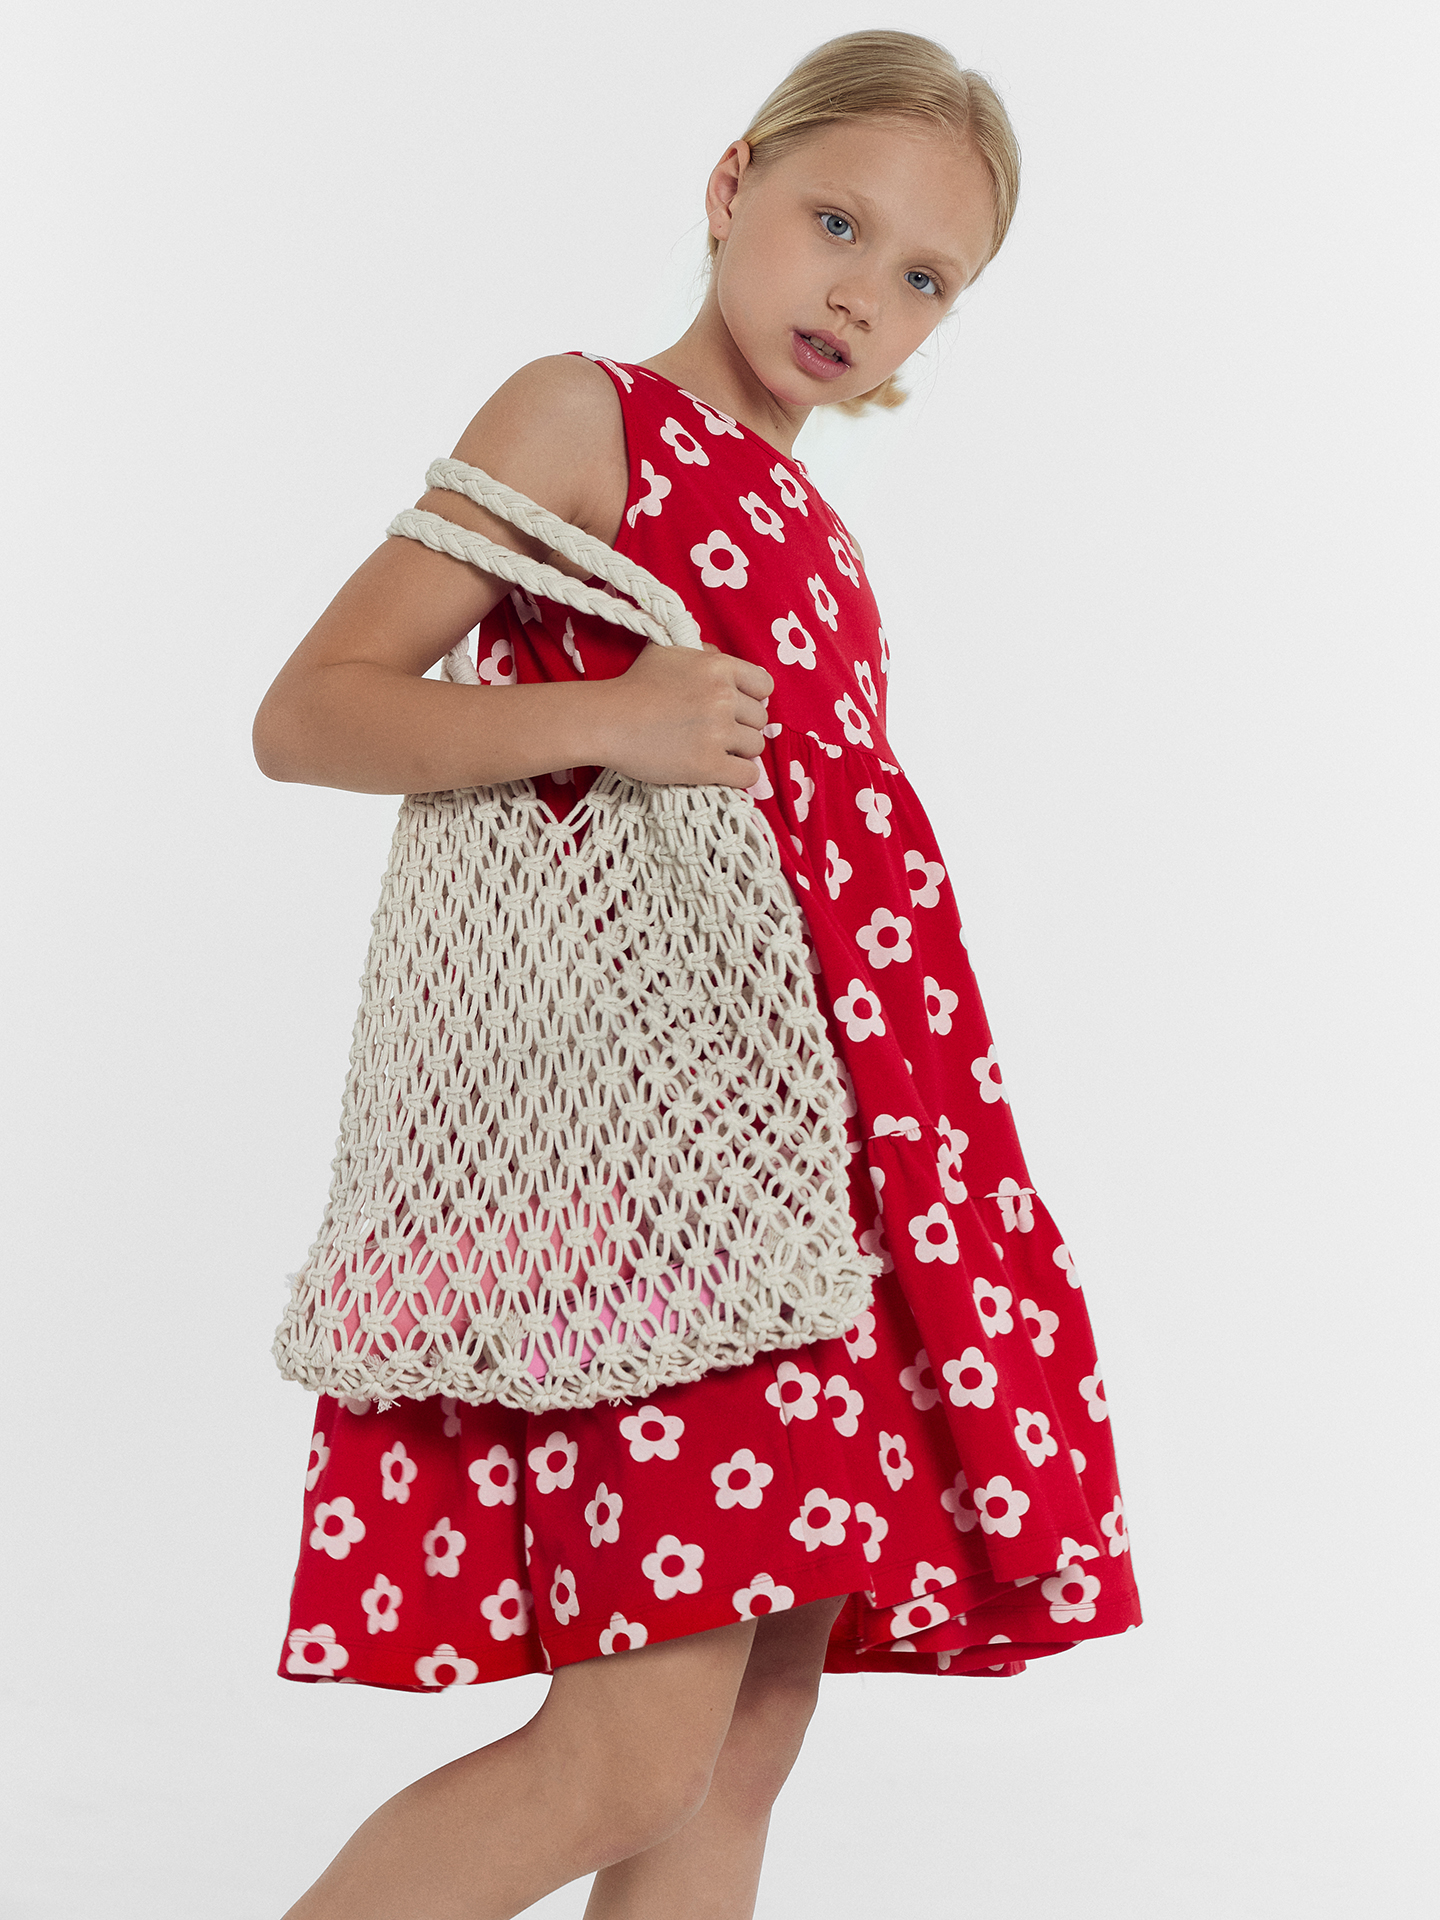 Платье для девочек Mark Formelle, цвет ромашки на красном, размер 128-64